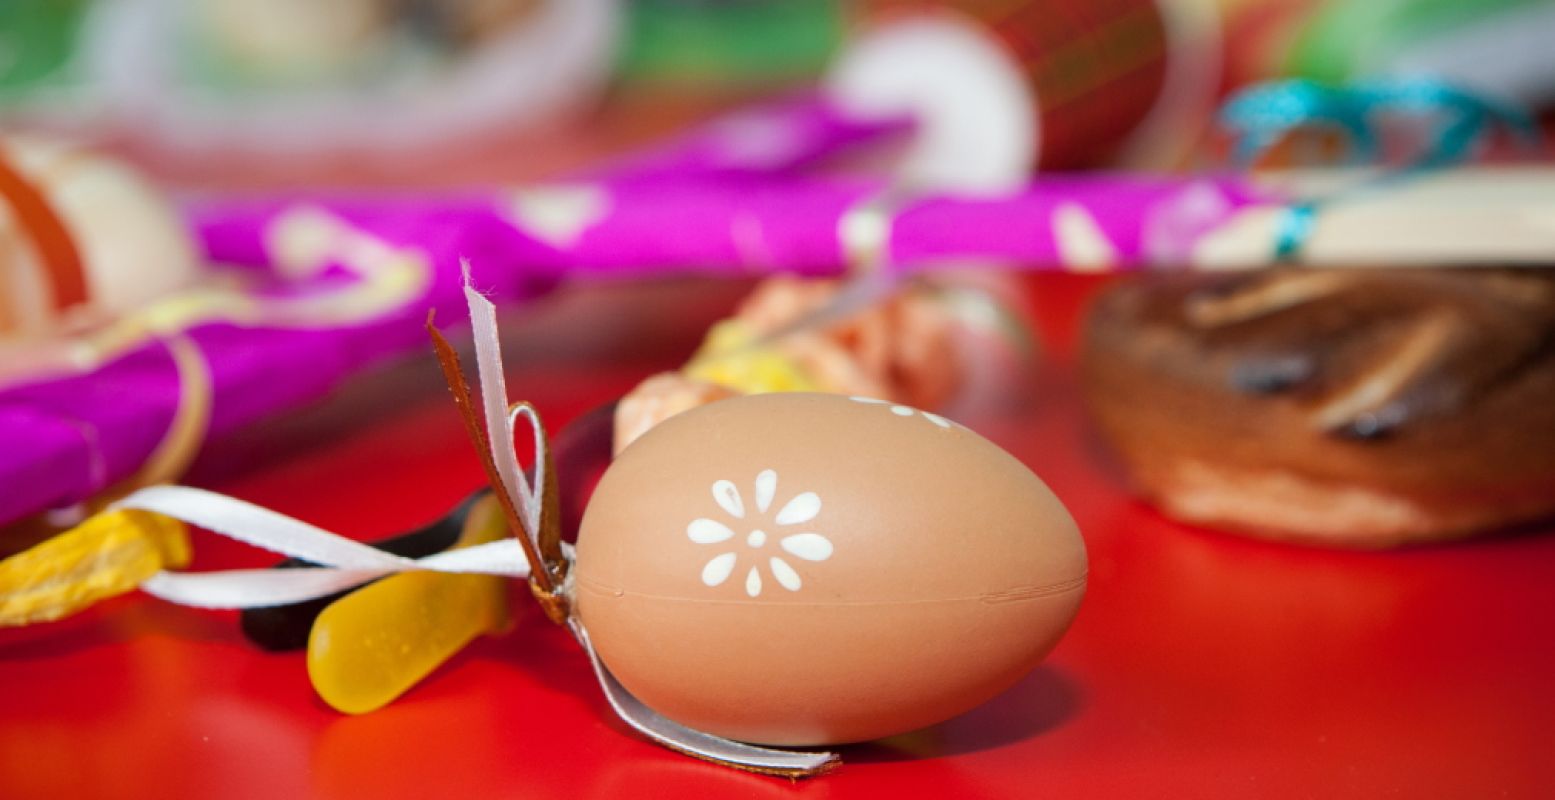 Waarom zoeken we eieren met Pasen? En wat is Pesach precies? Ontdek het met Weet wat je viert. Foto: Museum Catharijneconvent © Rick Huizinga.